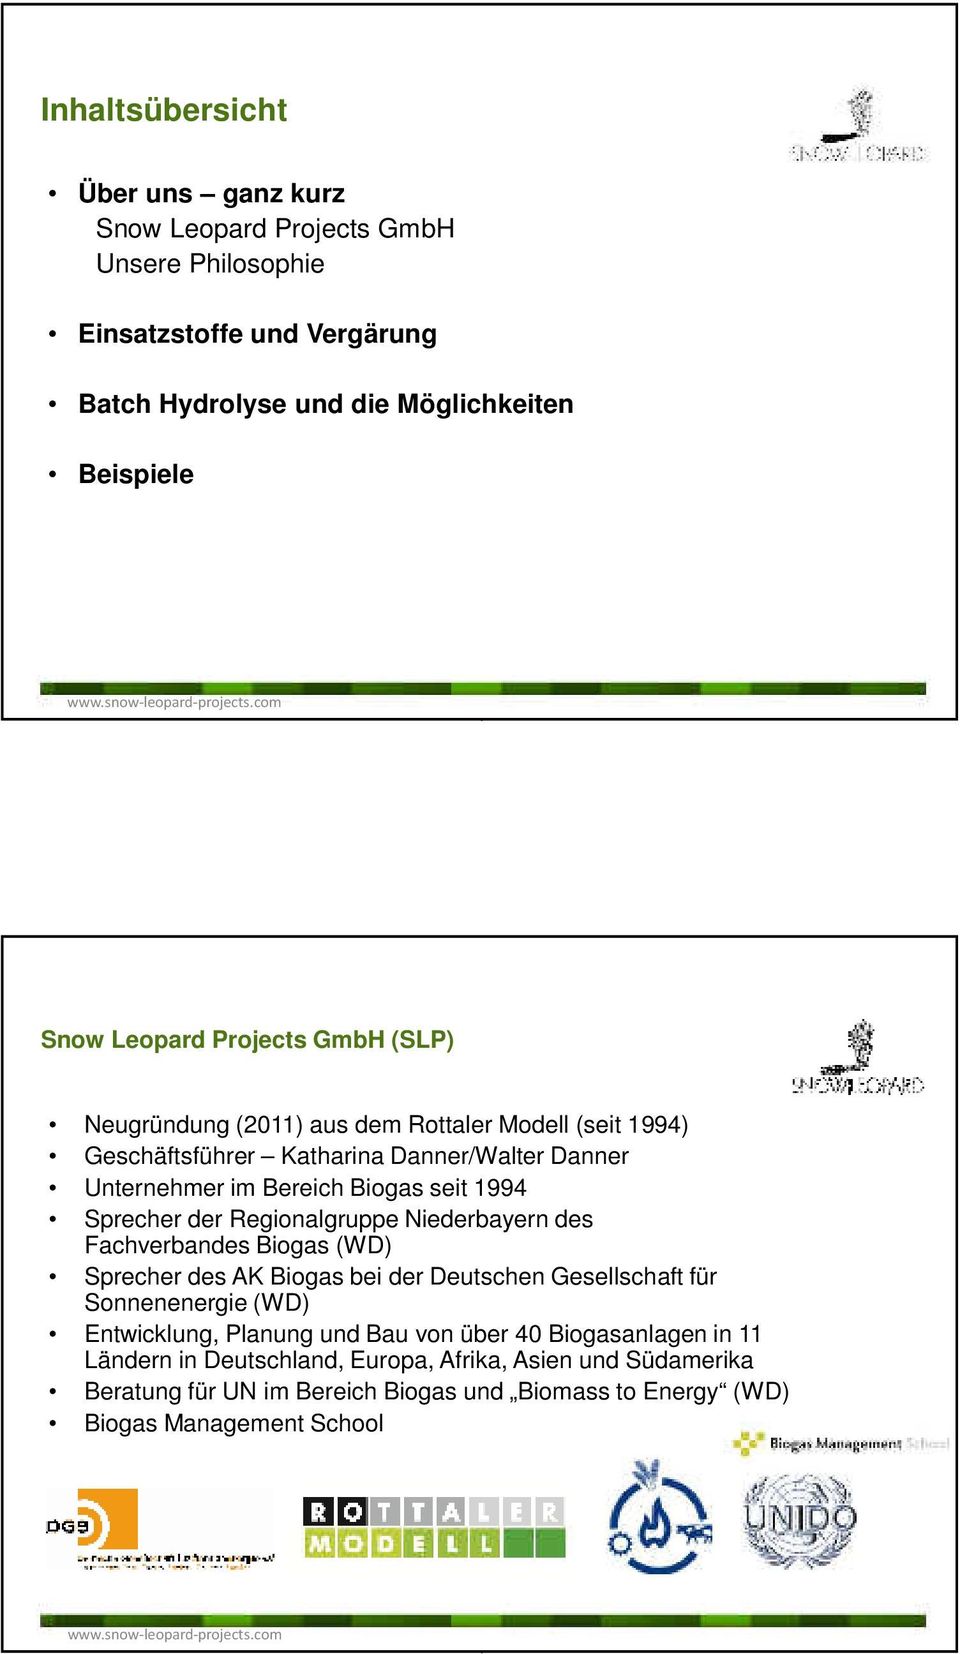 der Regionalgruppe Niederbayern des Fachverbandes Biogas (WD) Sprecher des AK Biogas bei der Deutschen Gesellschaft für Sonnenenergie (WD) Entwicklung, Planung und Bau von über 40